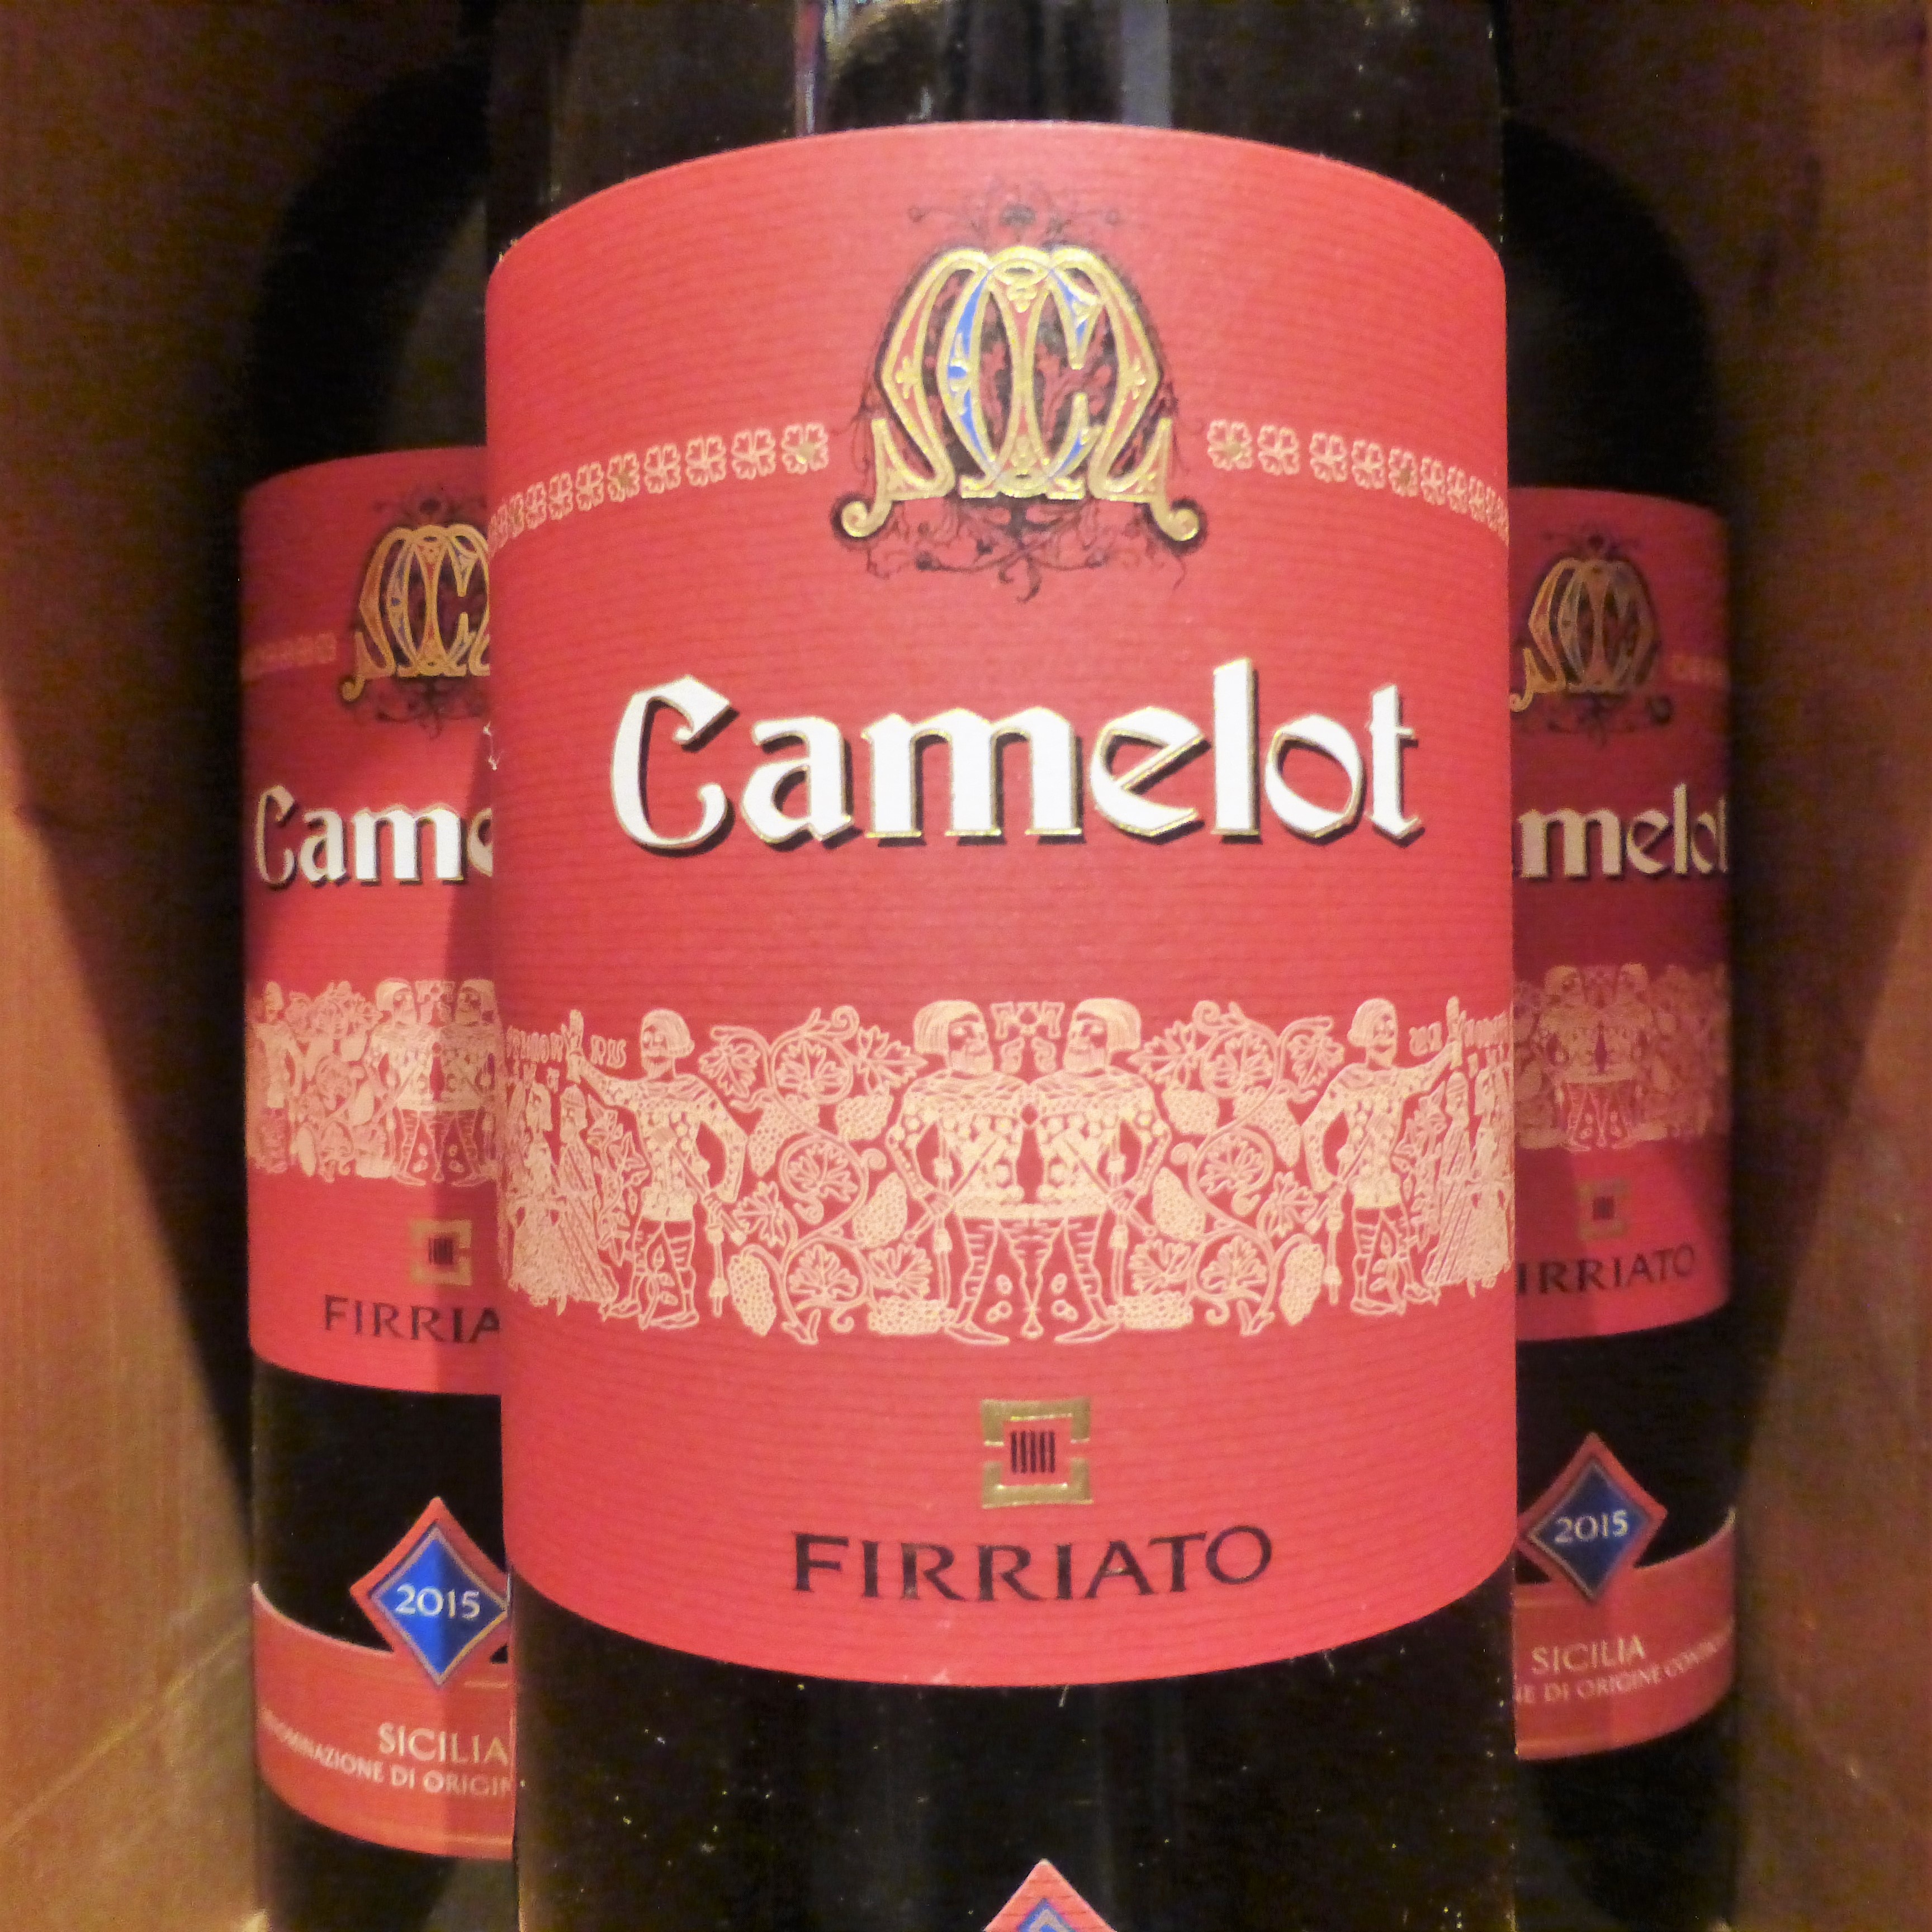 2016 Camelot -Firriato- Sicilia DOC